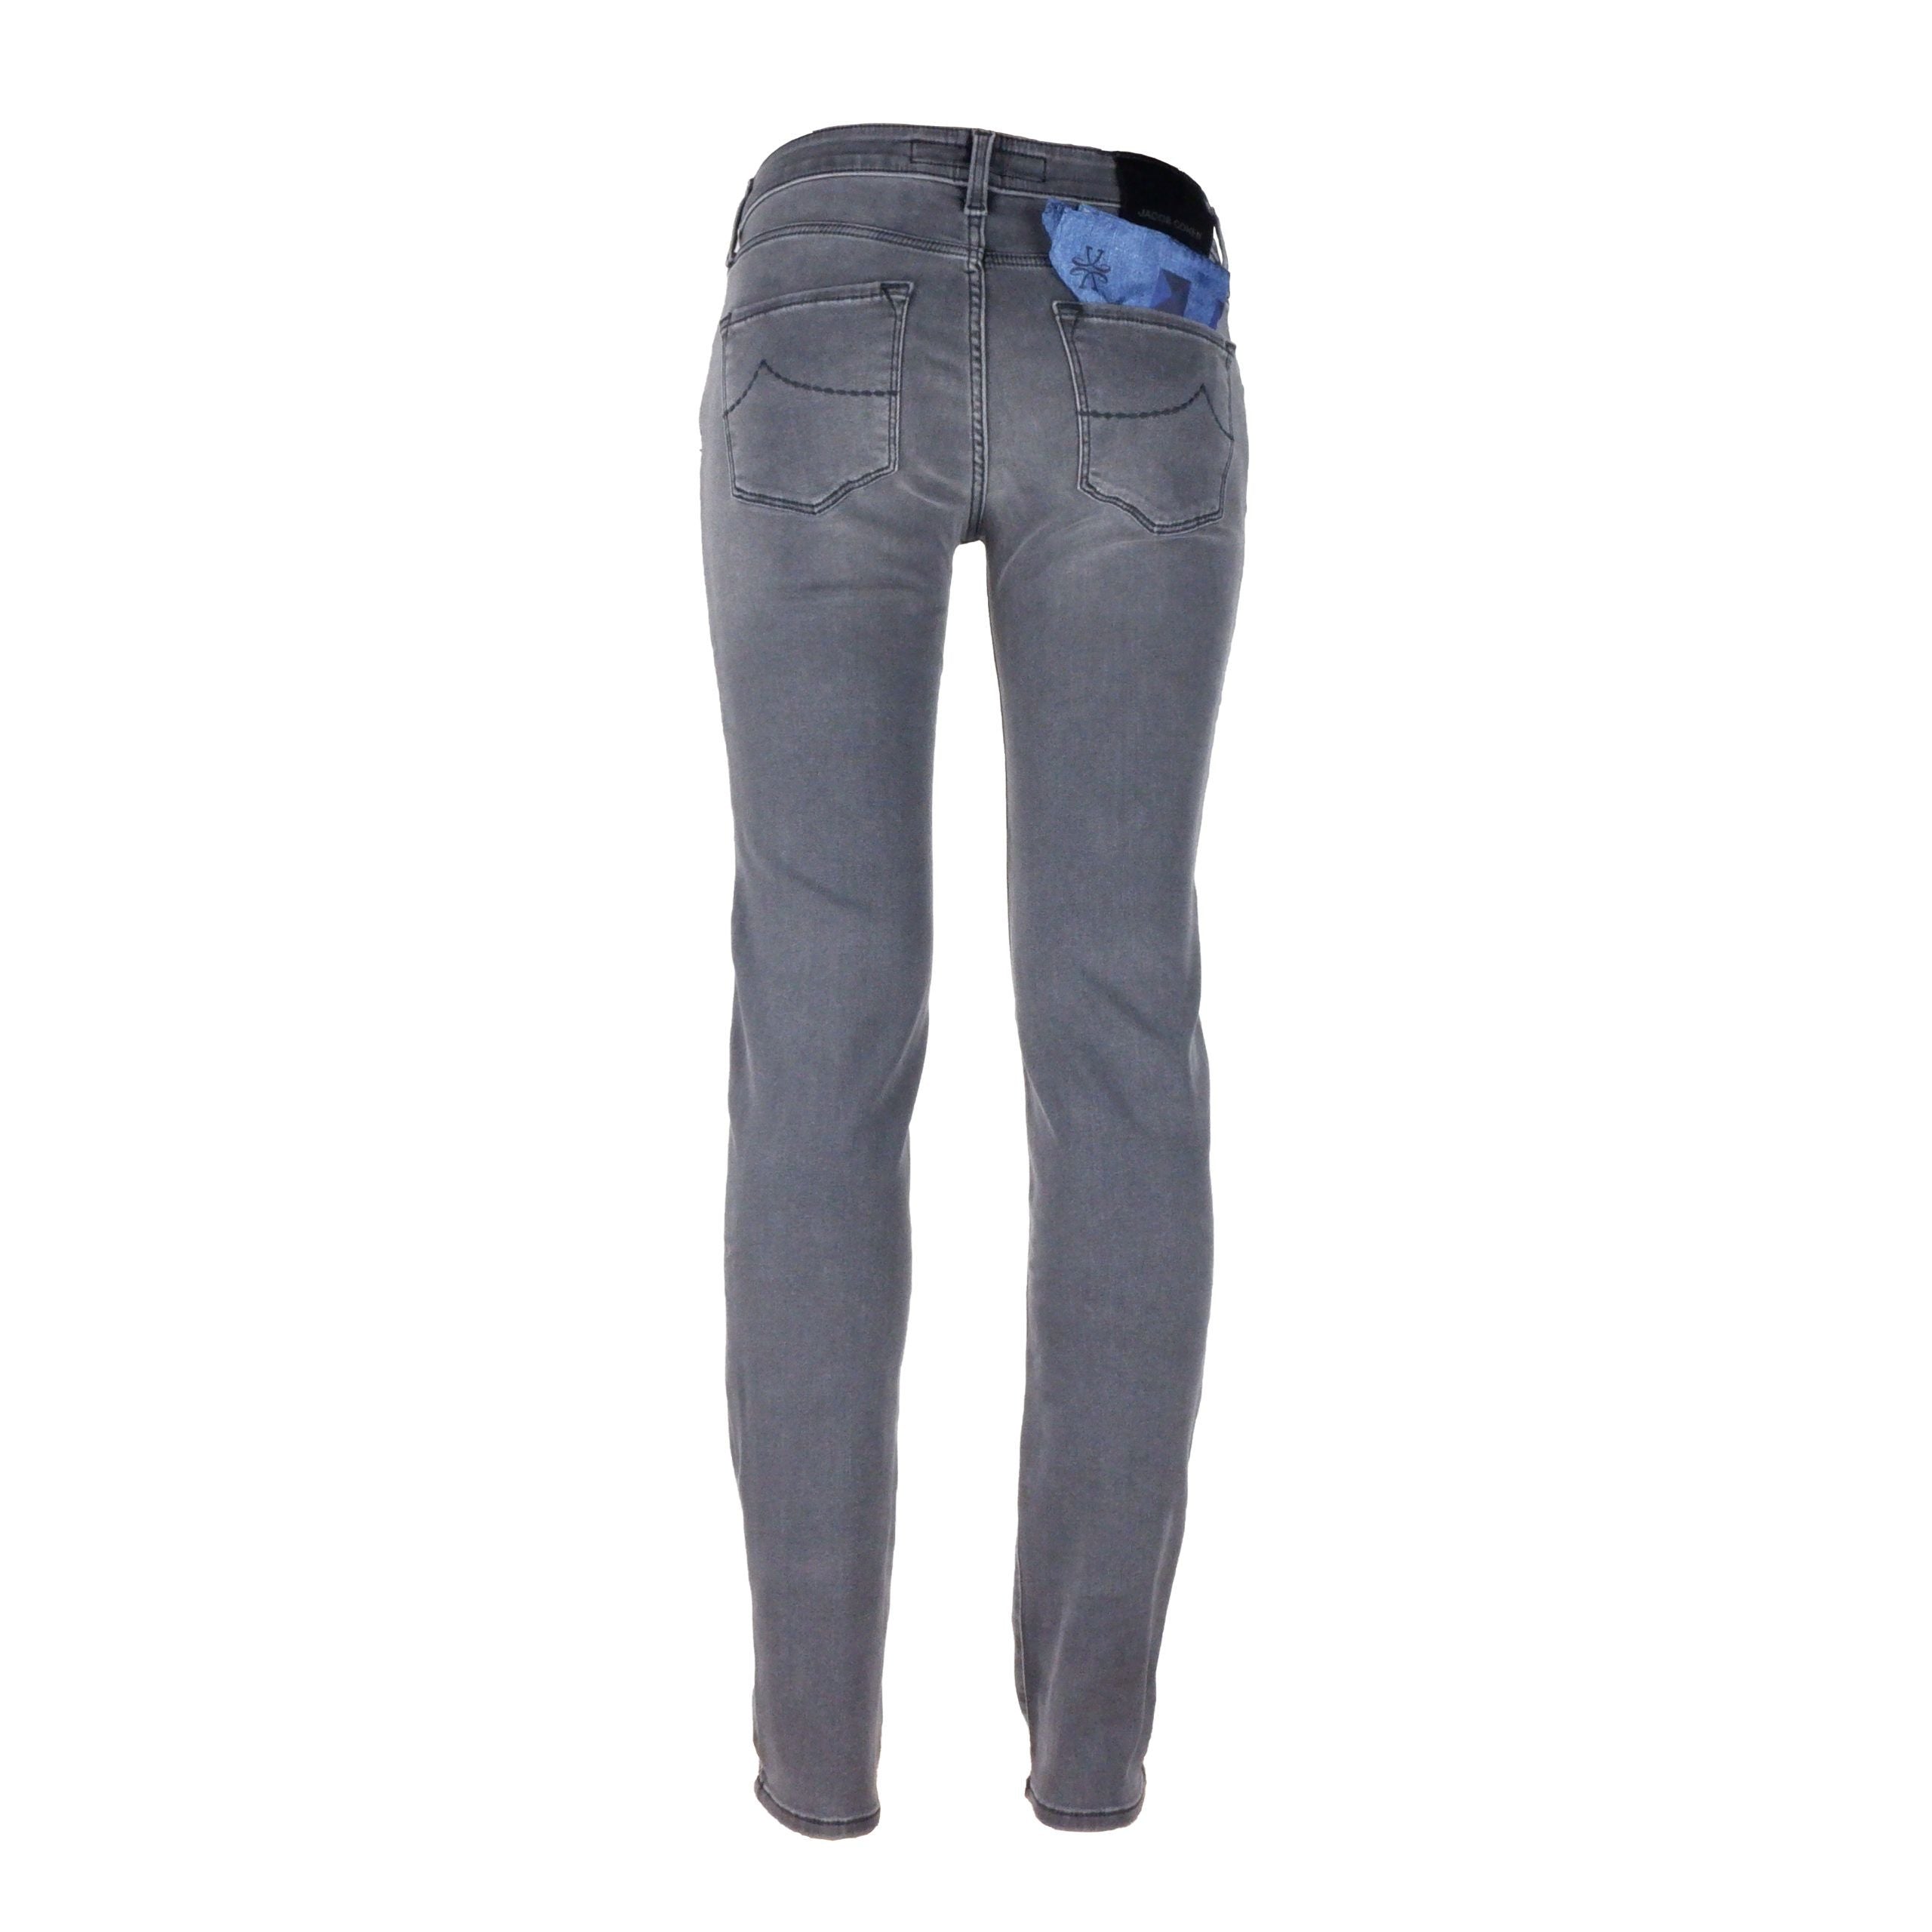 Jacob Cohen Gray Cotton Jeans & Pant